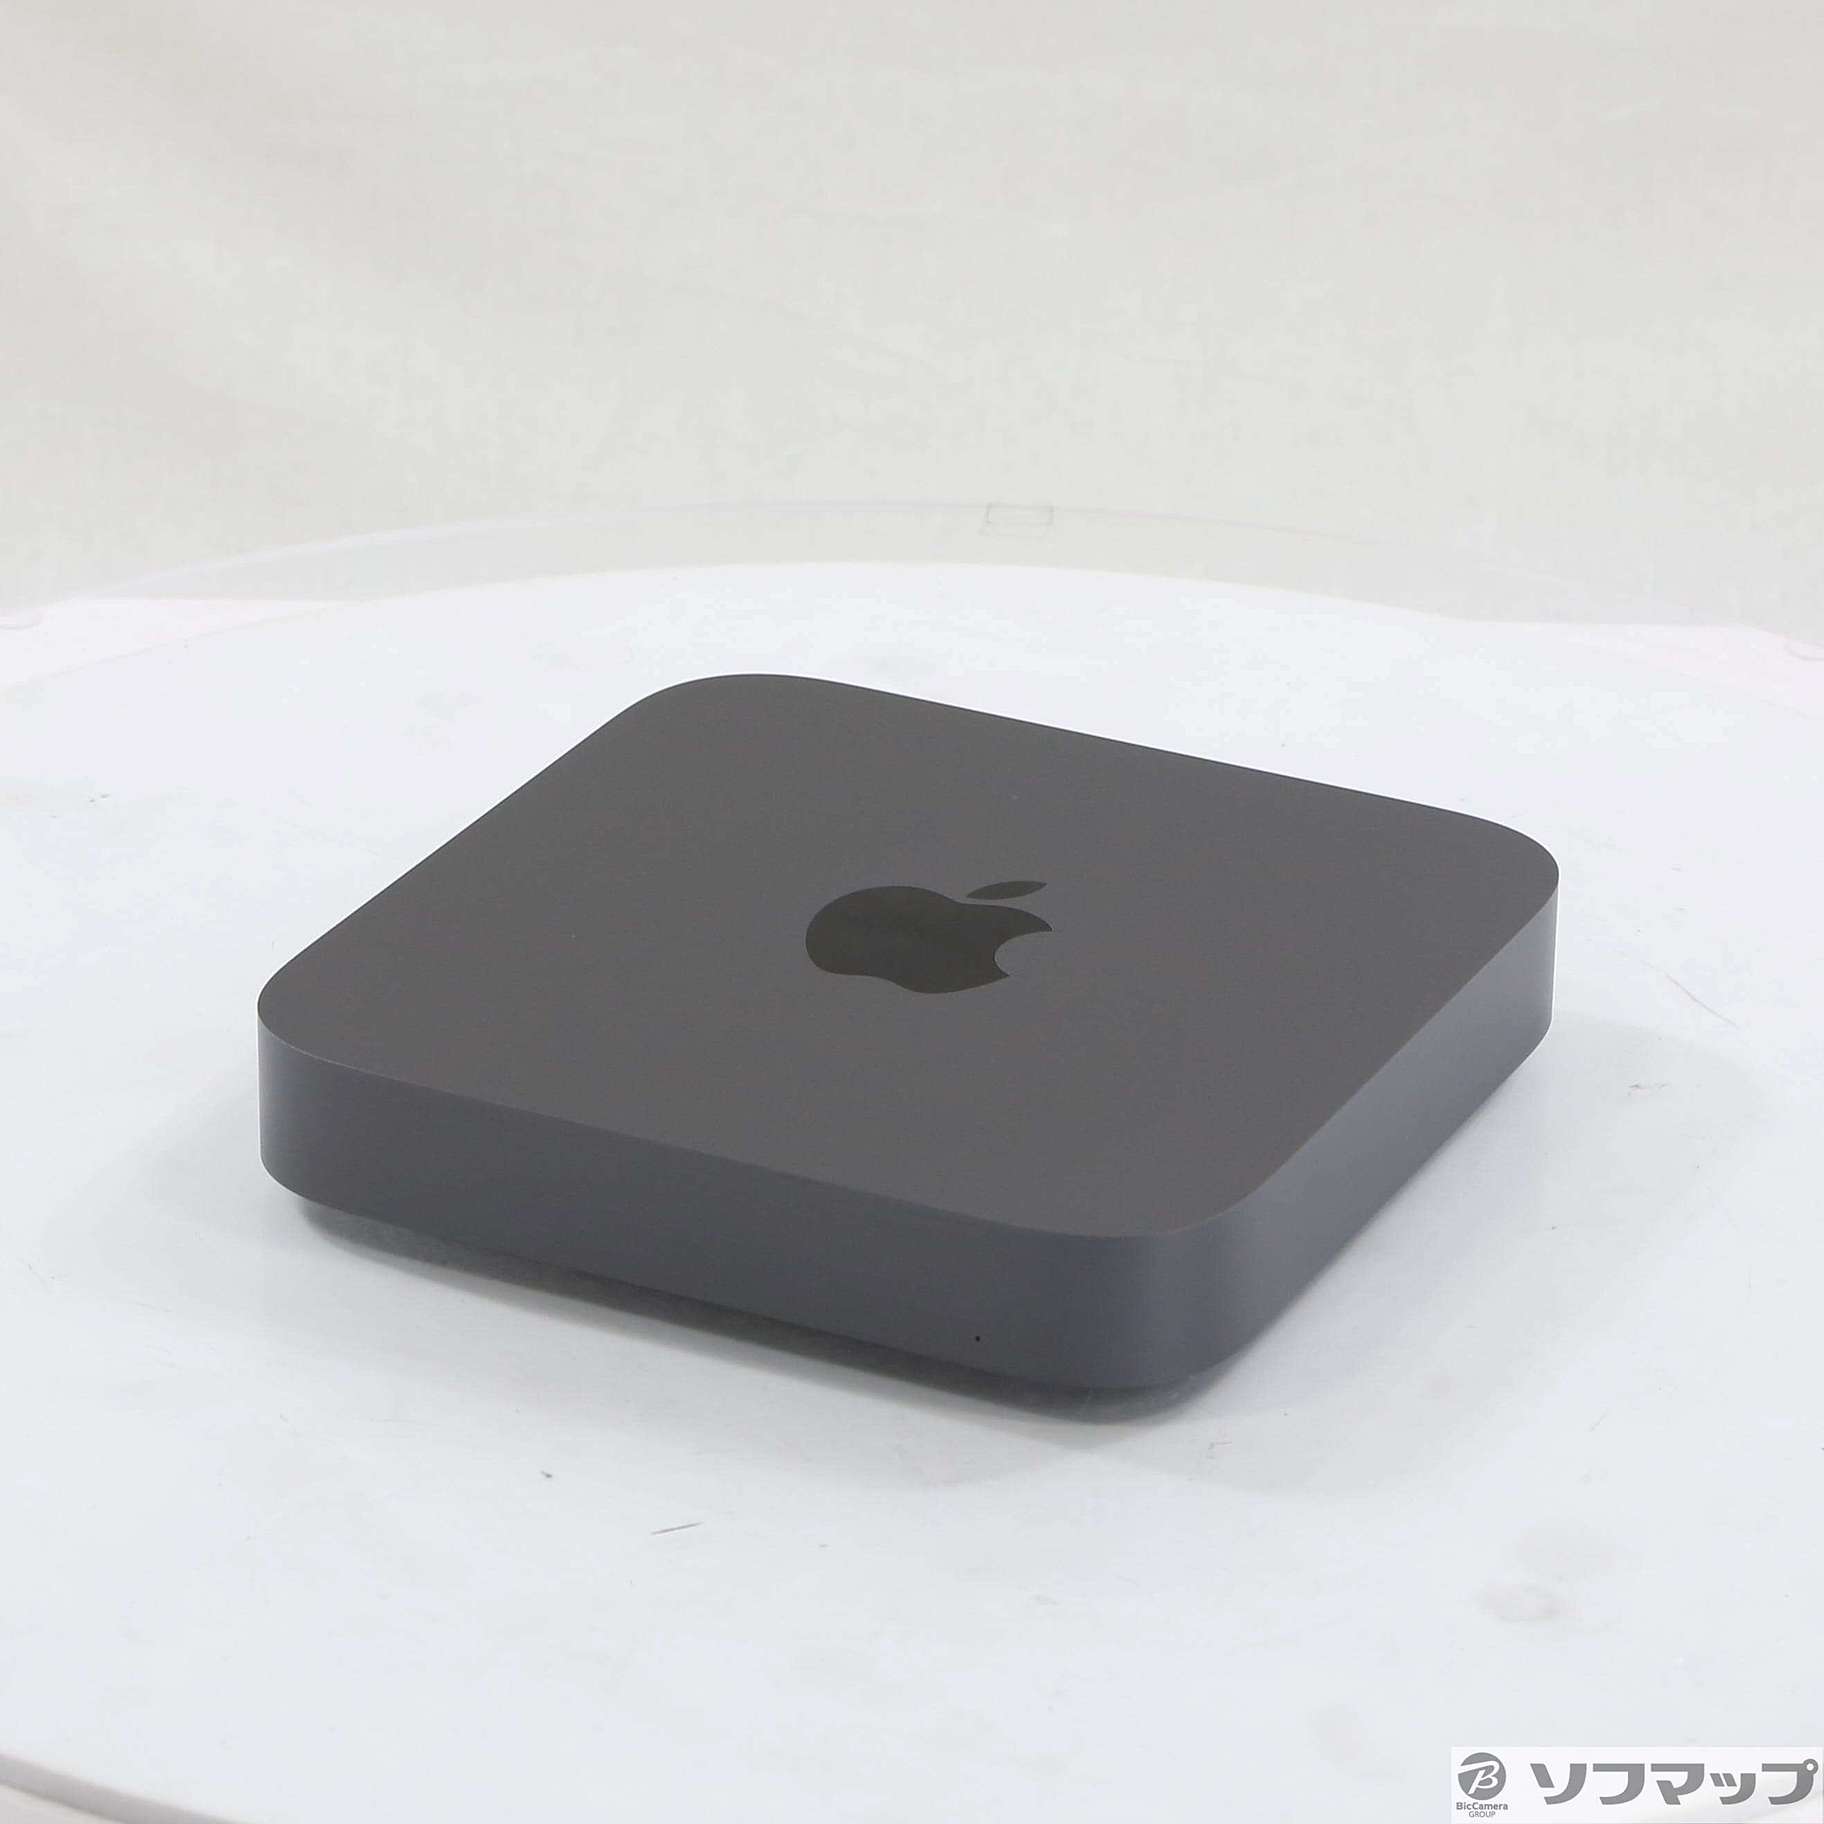 中古)Apple Mac mini Late 2018 MRTT2J A Core_i7 3.2GHz 16GB